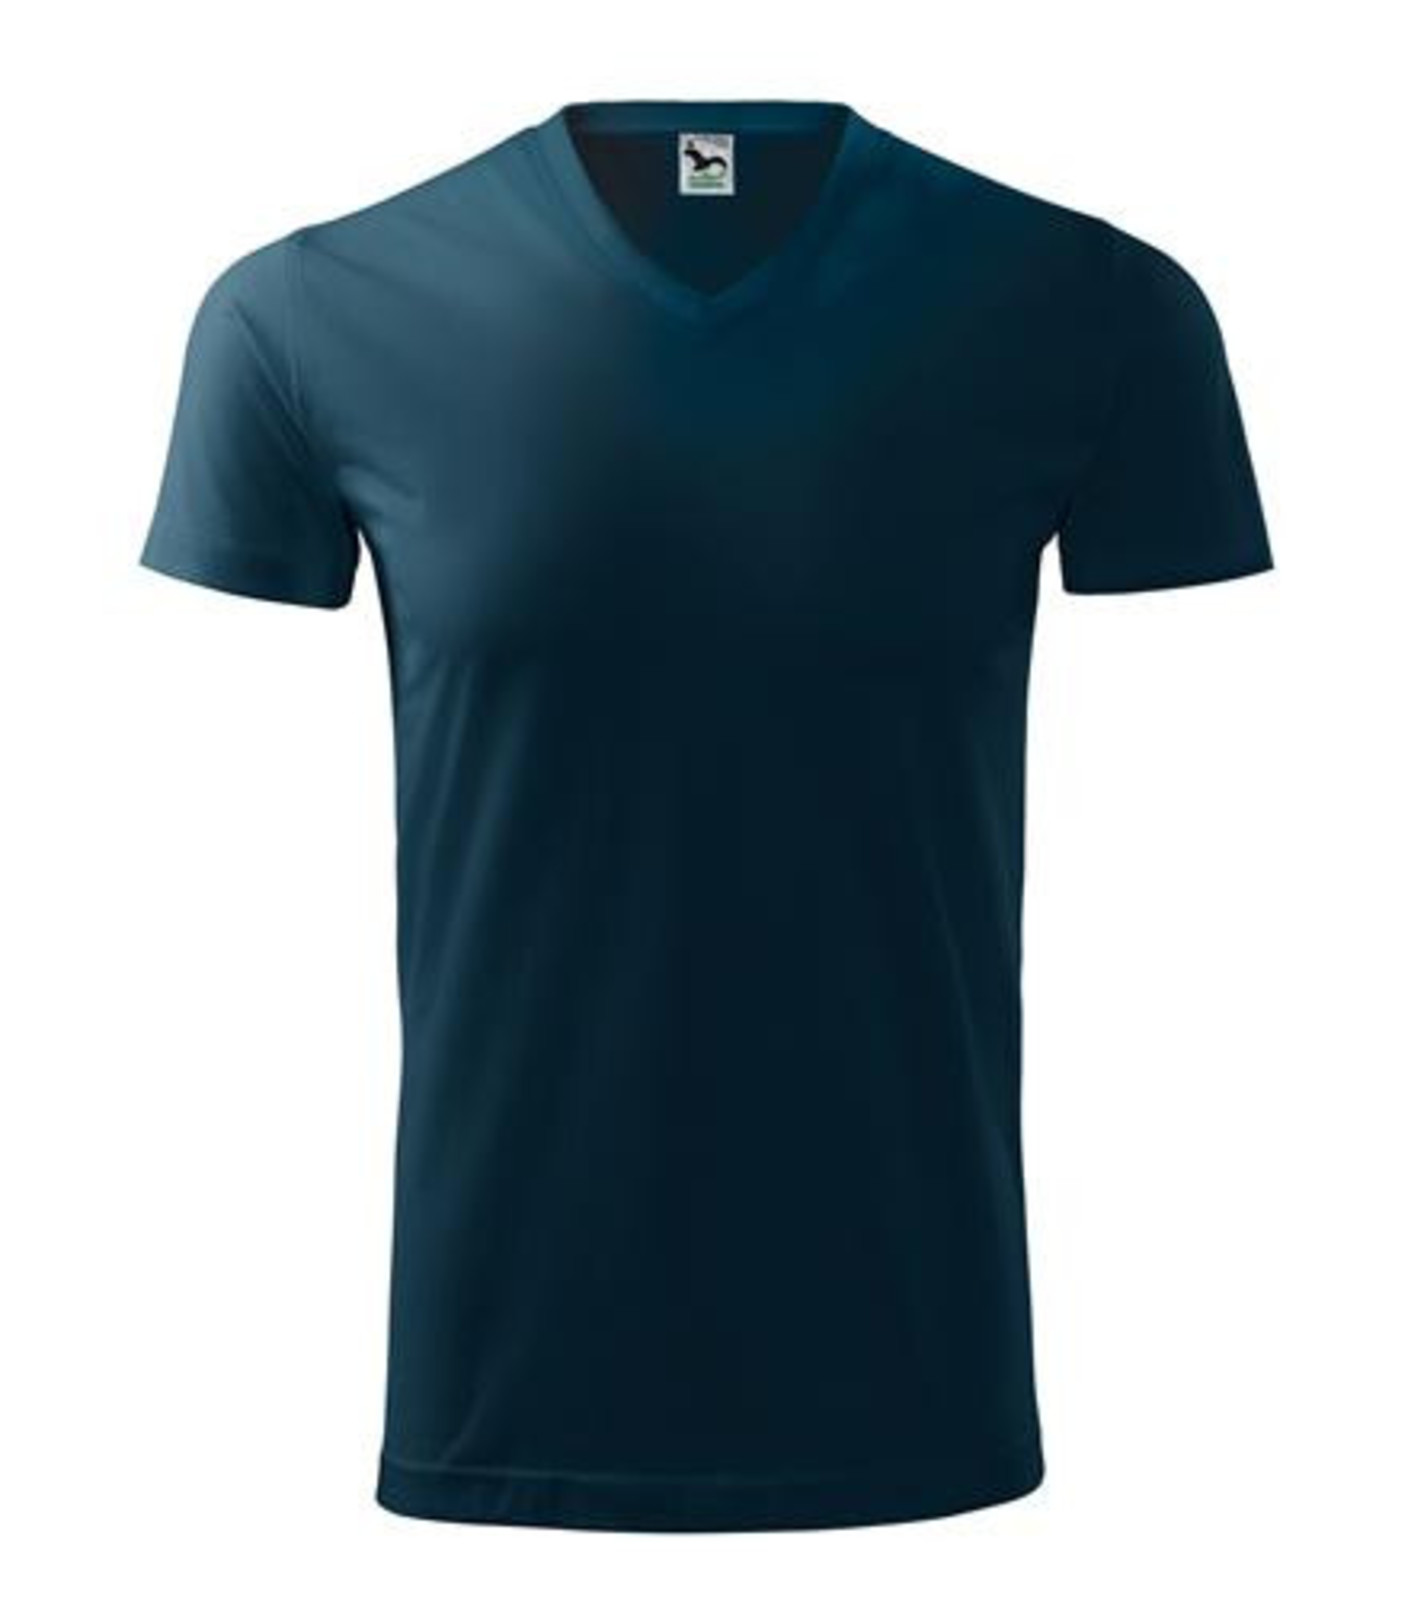 Unisex tričko s V výstrihom Adler Heavy V-Neck 111 - veľkosť: XXL, farba: tmavo modrá